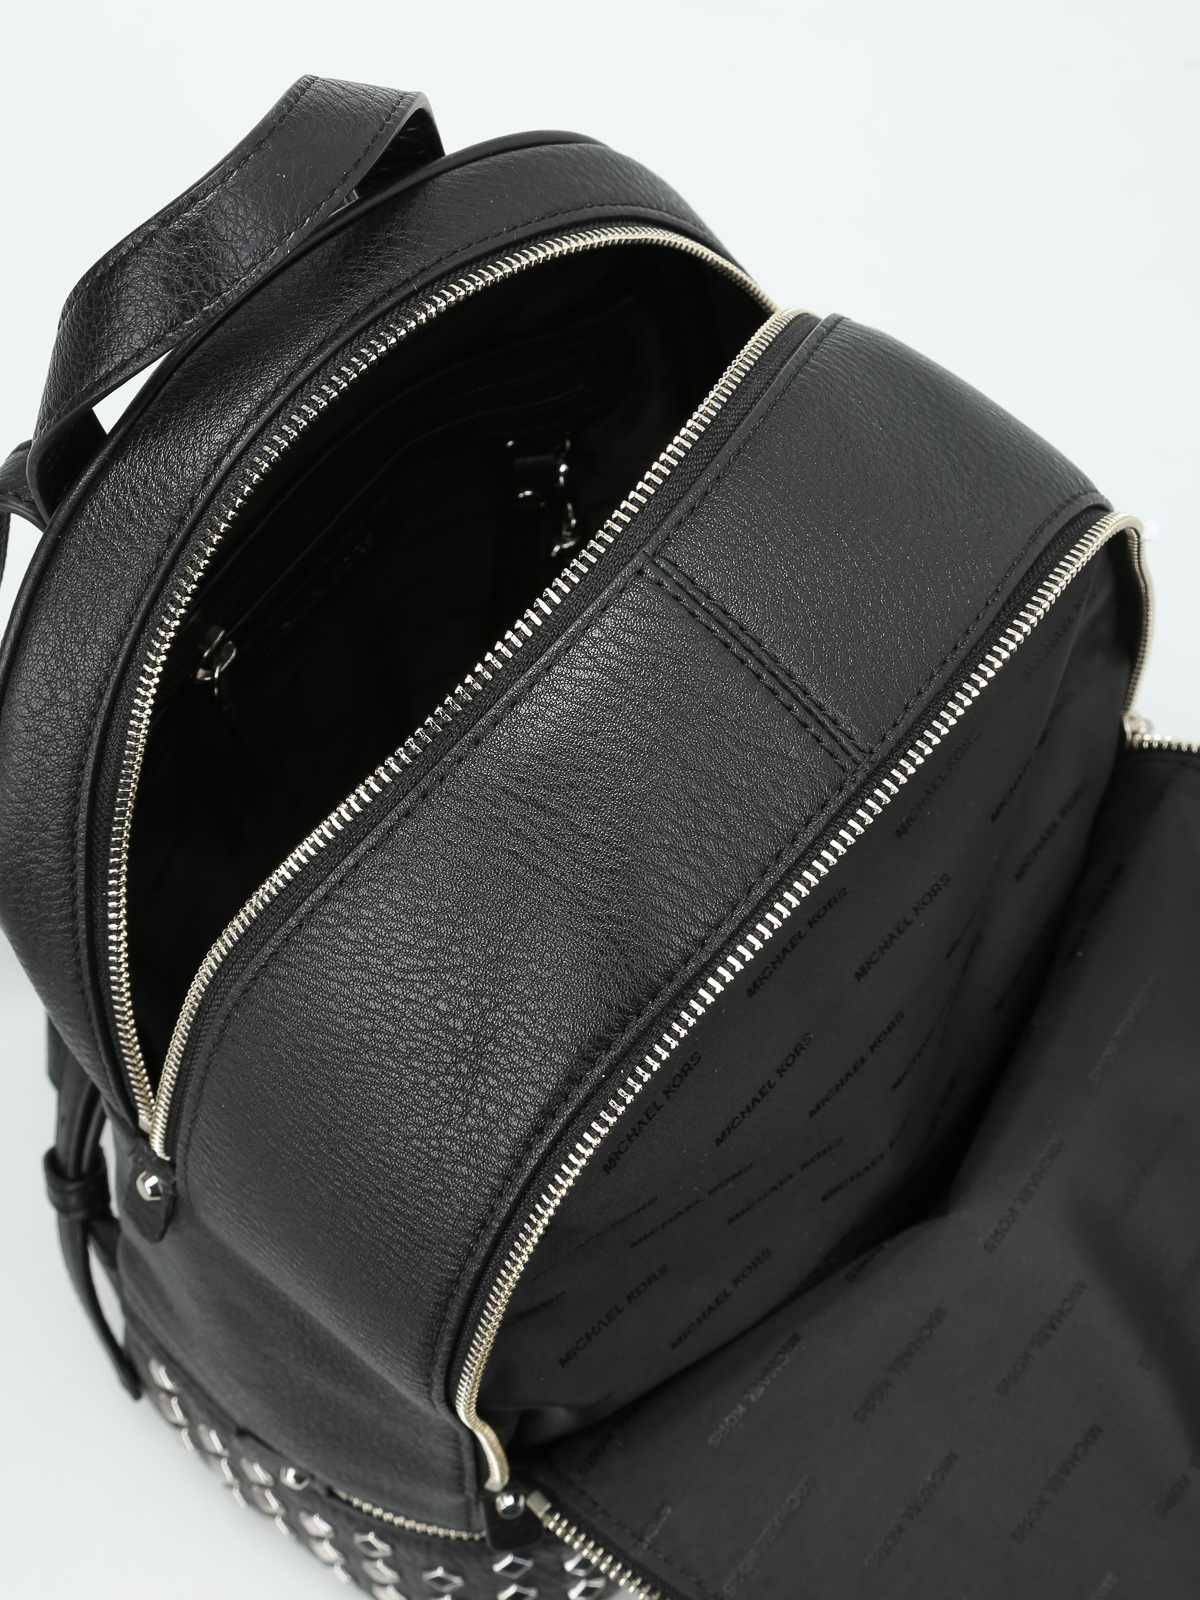 Men's Backpacks at Michael Kors - Bags